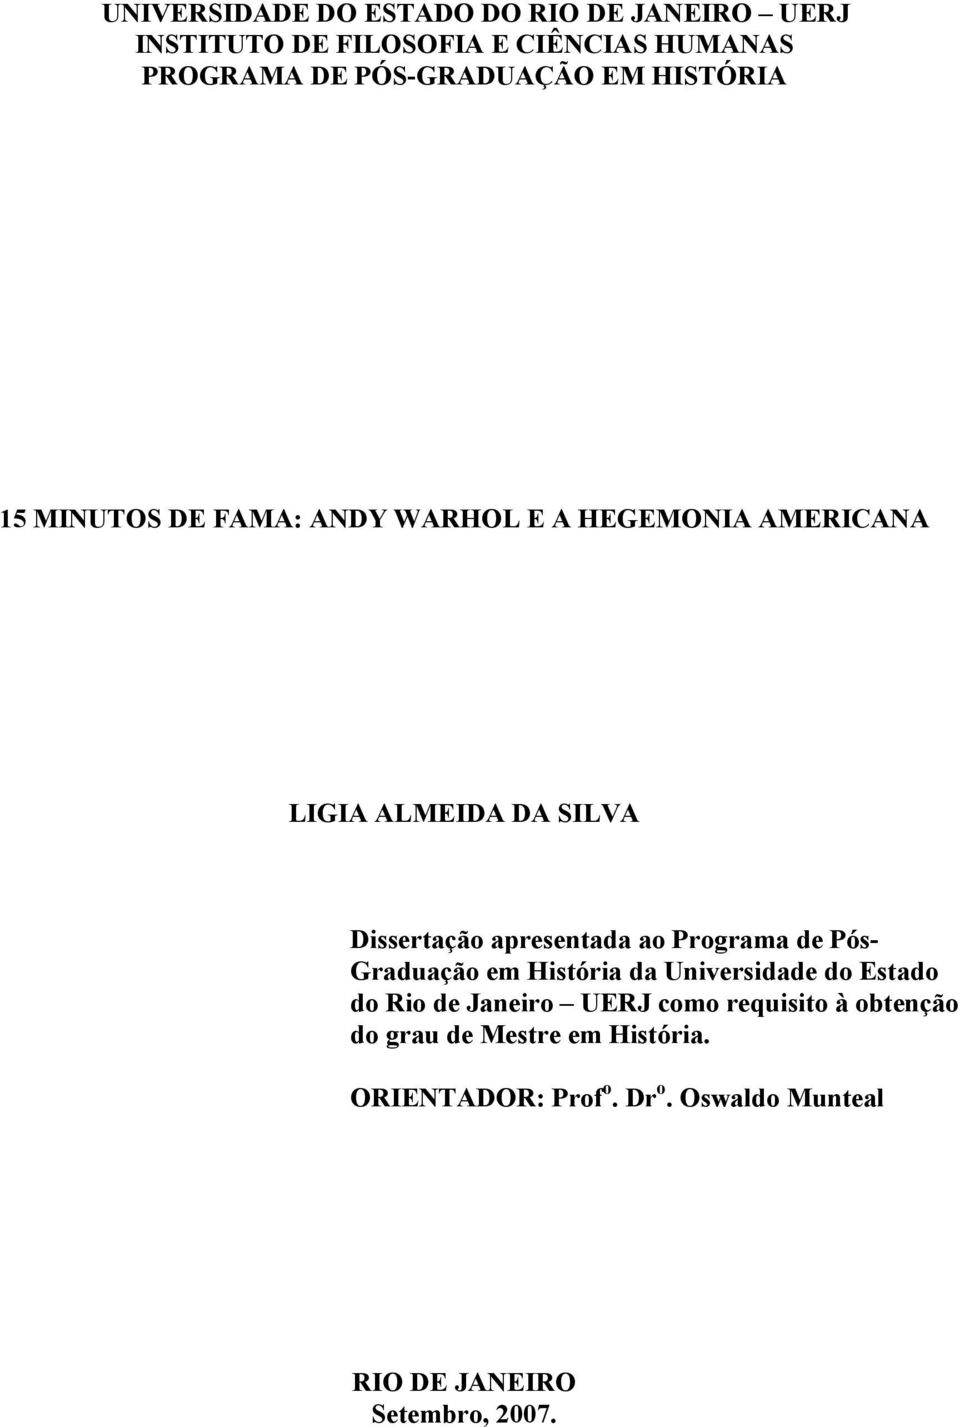 Dissertação apresentada ao Programa de Pós- Graduação em História da Universidade do Estado do Rio de Janeiro